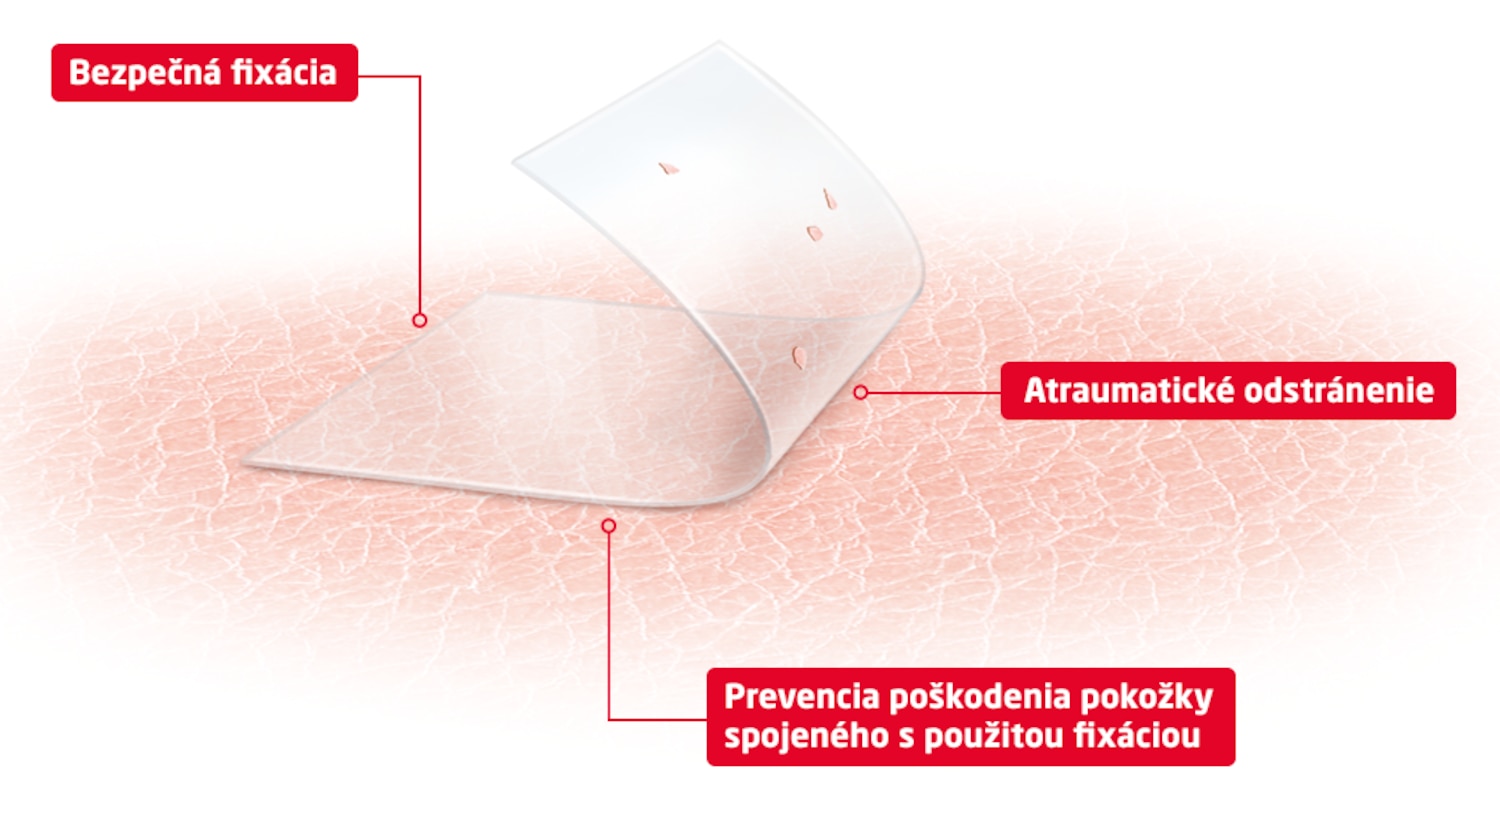 Obrázok znázorňujúci výhody technológie produktu pre citlivú pokožku: bezpečná fixácia, atraumatické odstránenie a prevencia poškodenia pokožky spôsobené lepidlom.